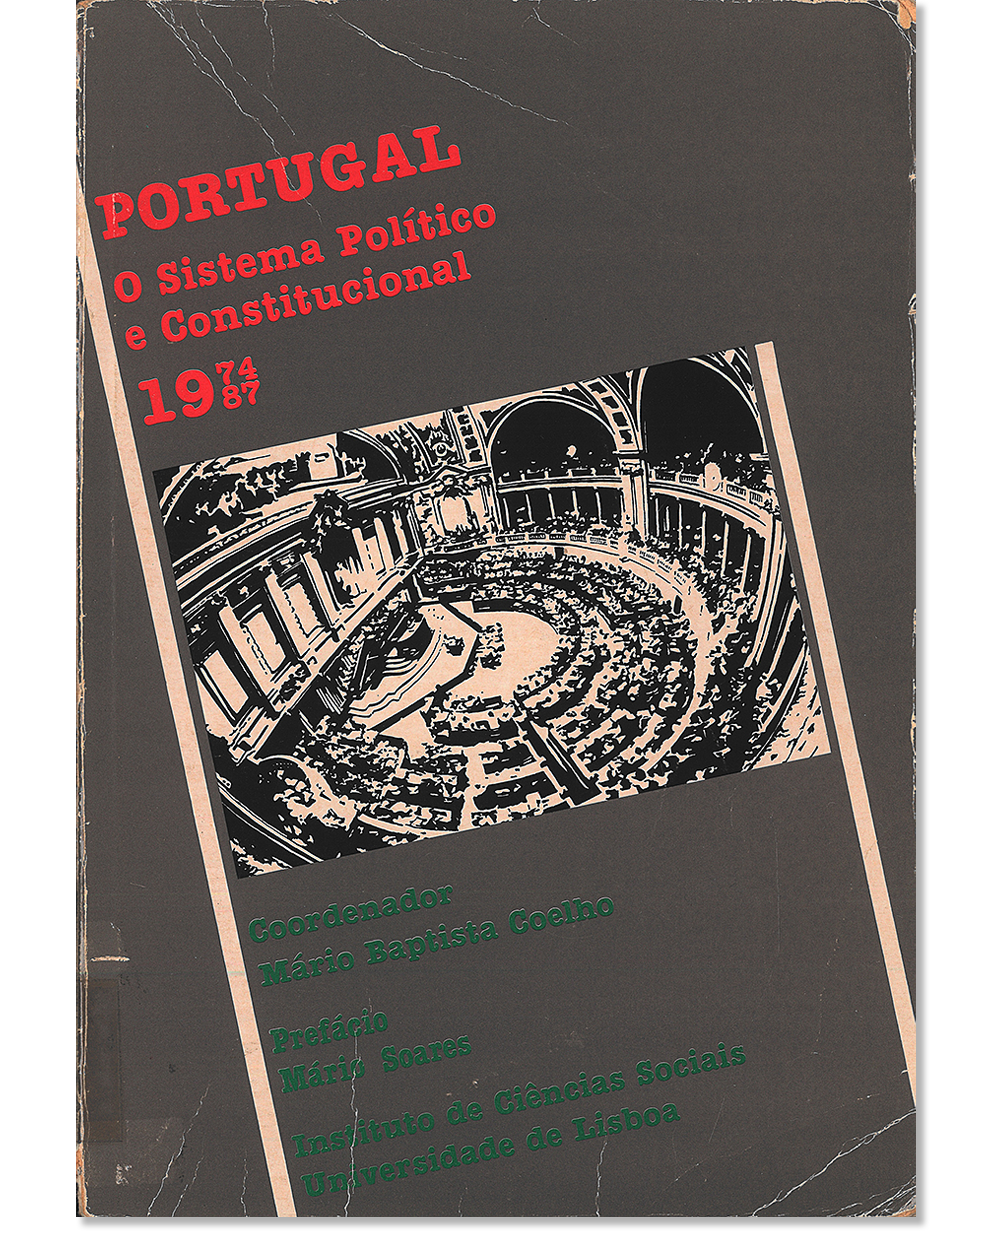 Portugal : o sistema político e constitucional, 1974-87